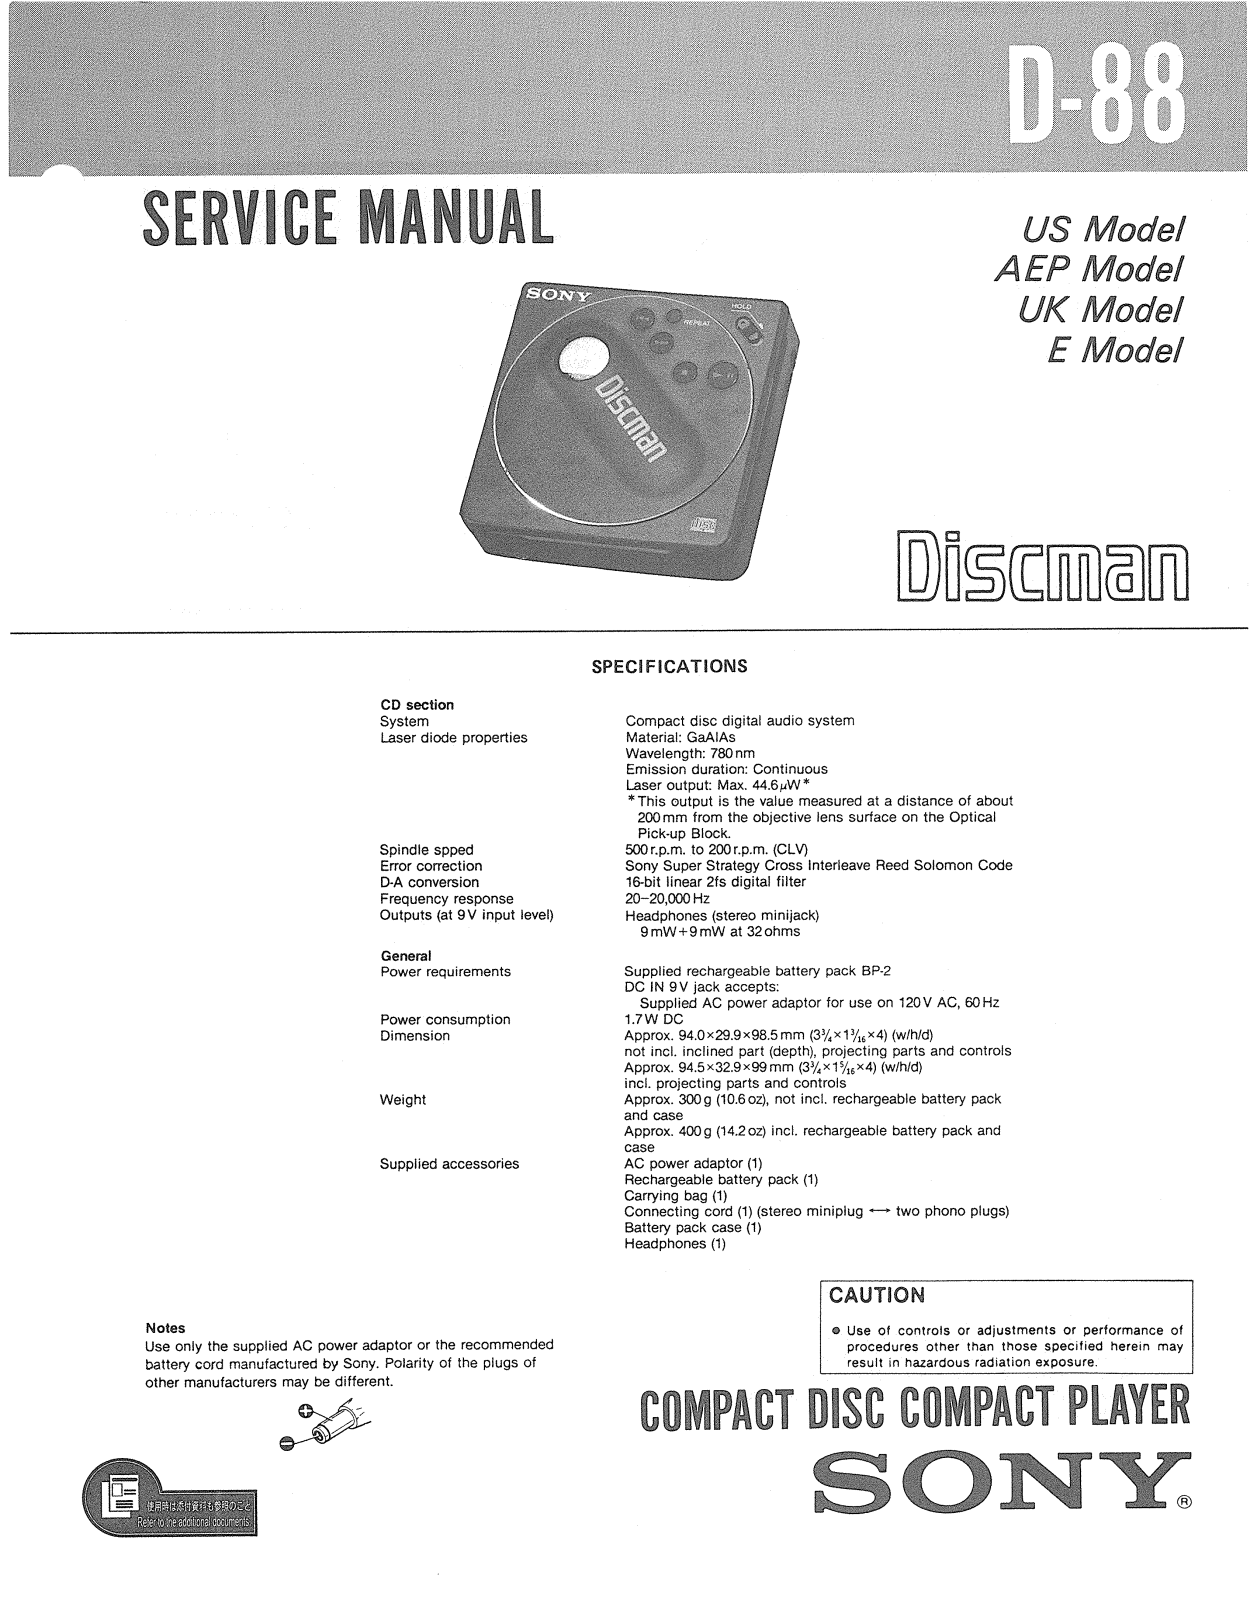 Sony D-88 Service manual